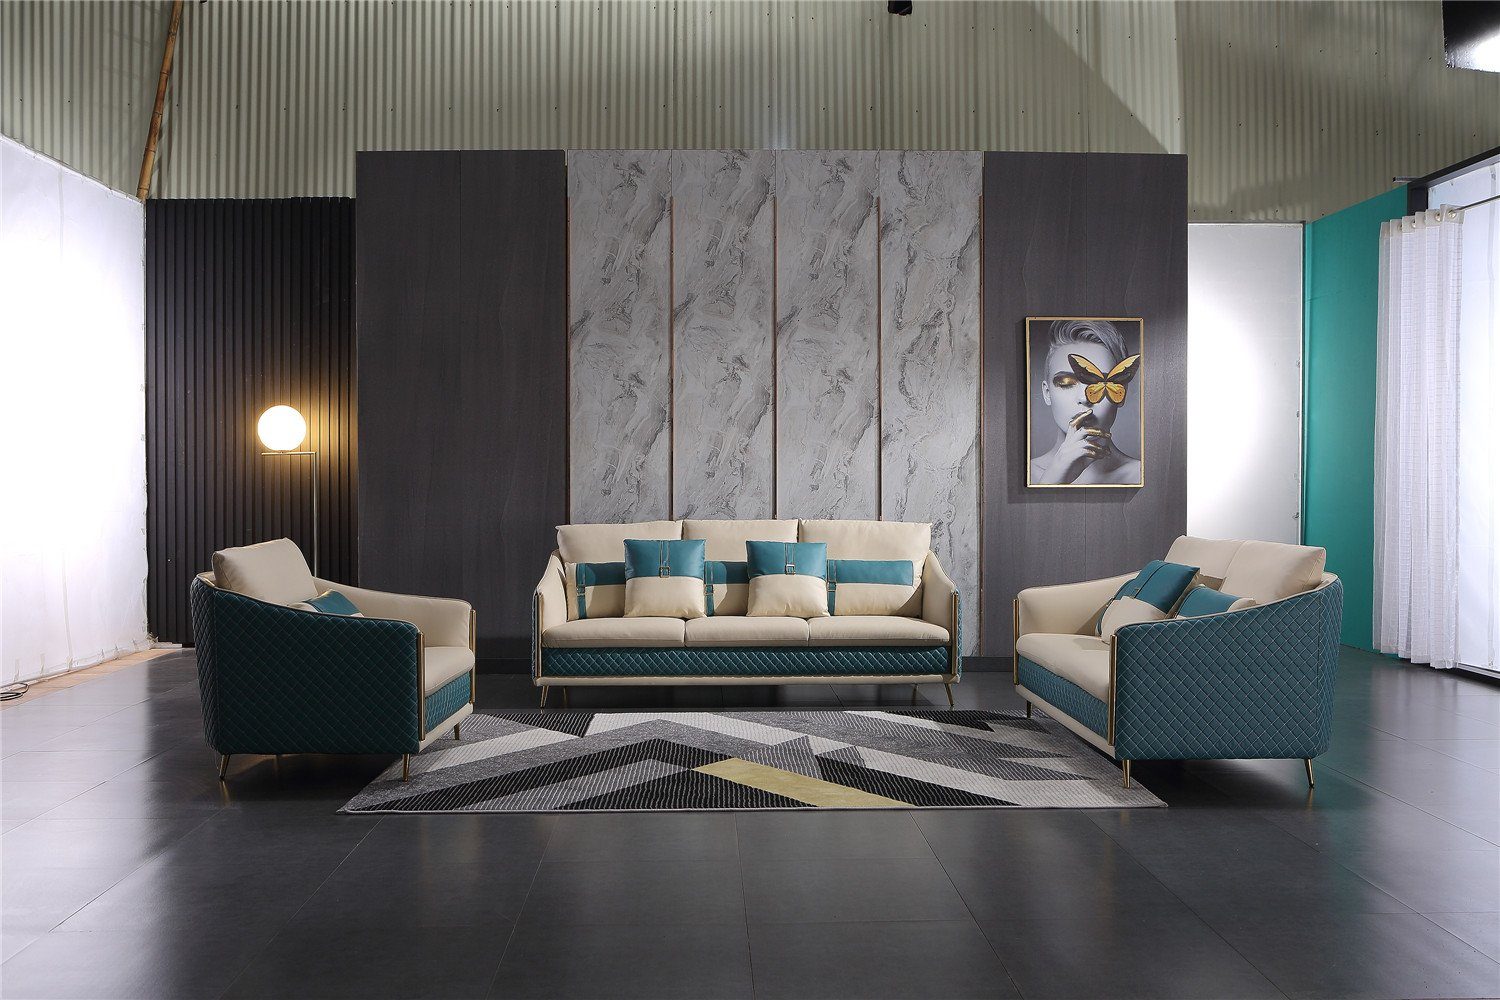 Neu, Made Sofa Moderne Polstermöbel in Europe Sofagarnitur 3+1+1 Sitzer luxus JVmoebel Design